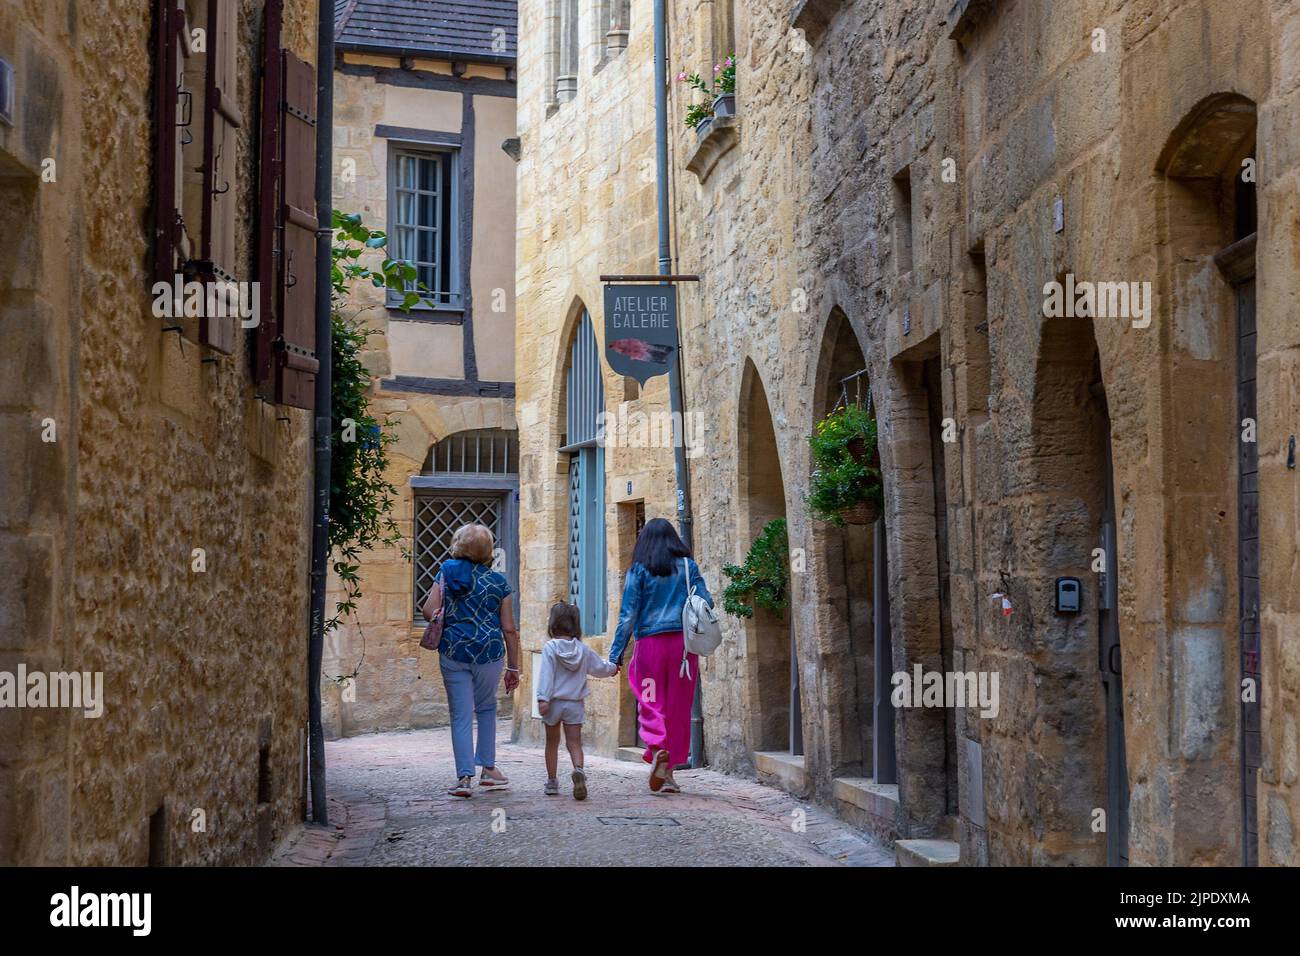 C) Denis TRASFI / MAXPPP - à Sarlat-la-Canéda le 16-08-2022 - Ruelles anciennes dans la cité médiévale avec des promeneurs Foto Stock